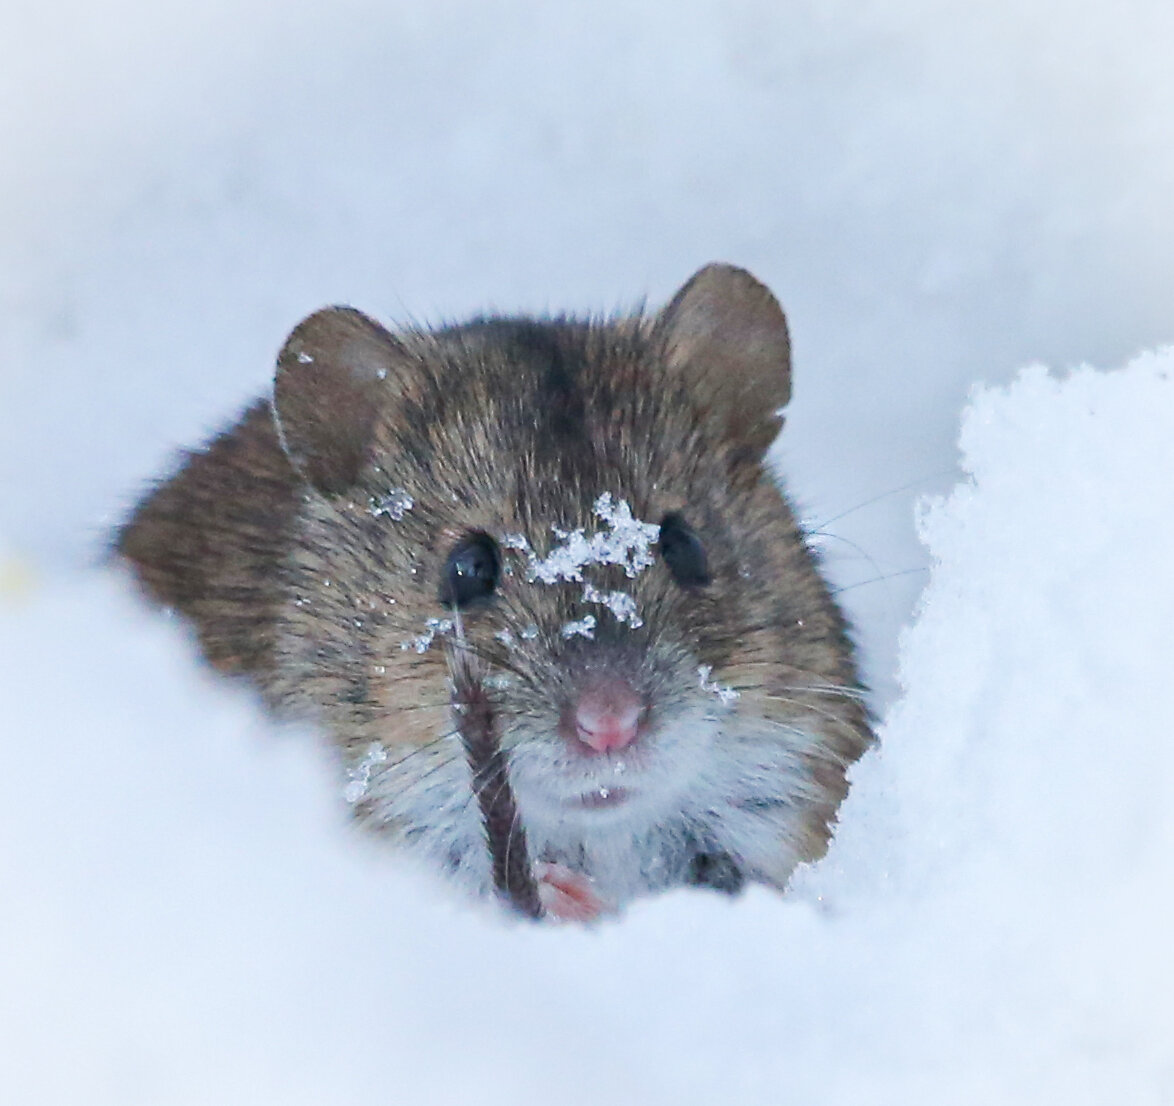 Специалистам Мосприроды удалось сфотографировать мышку в  природно-историческом парке «Покровское-Стрешнево».